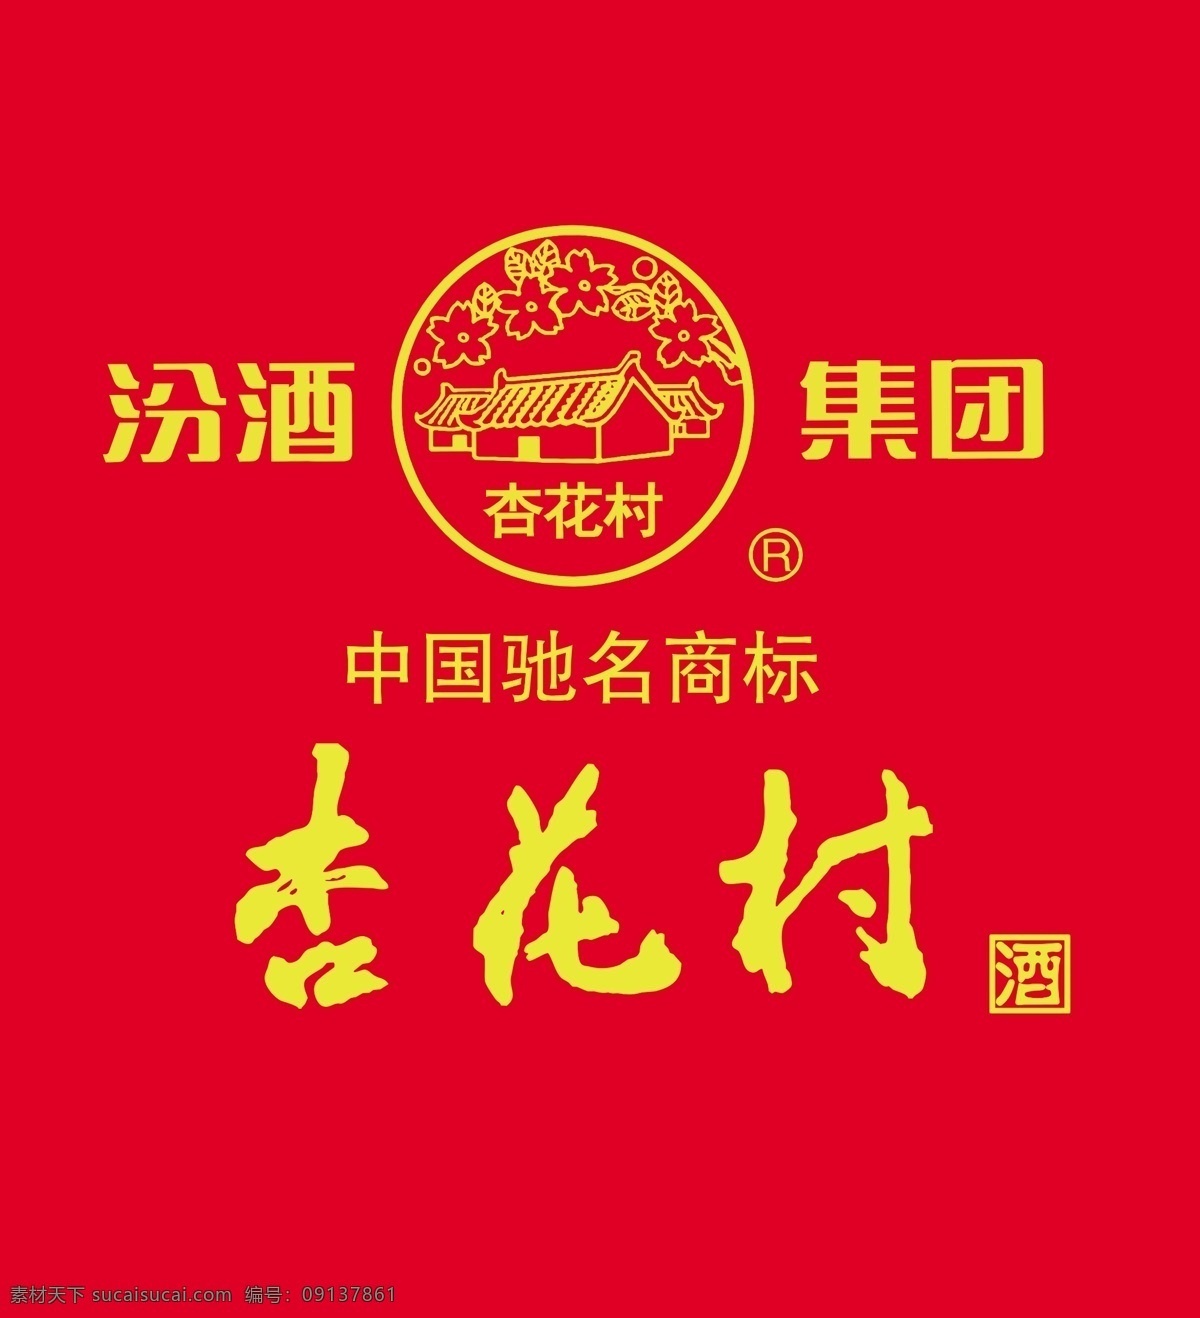 杏花村 汾酒 汾酒集团 logo 中国驰名